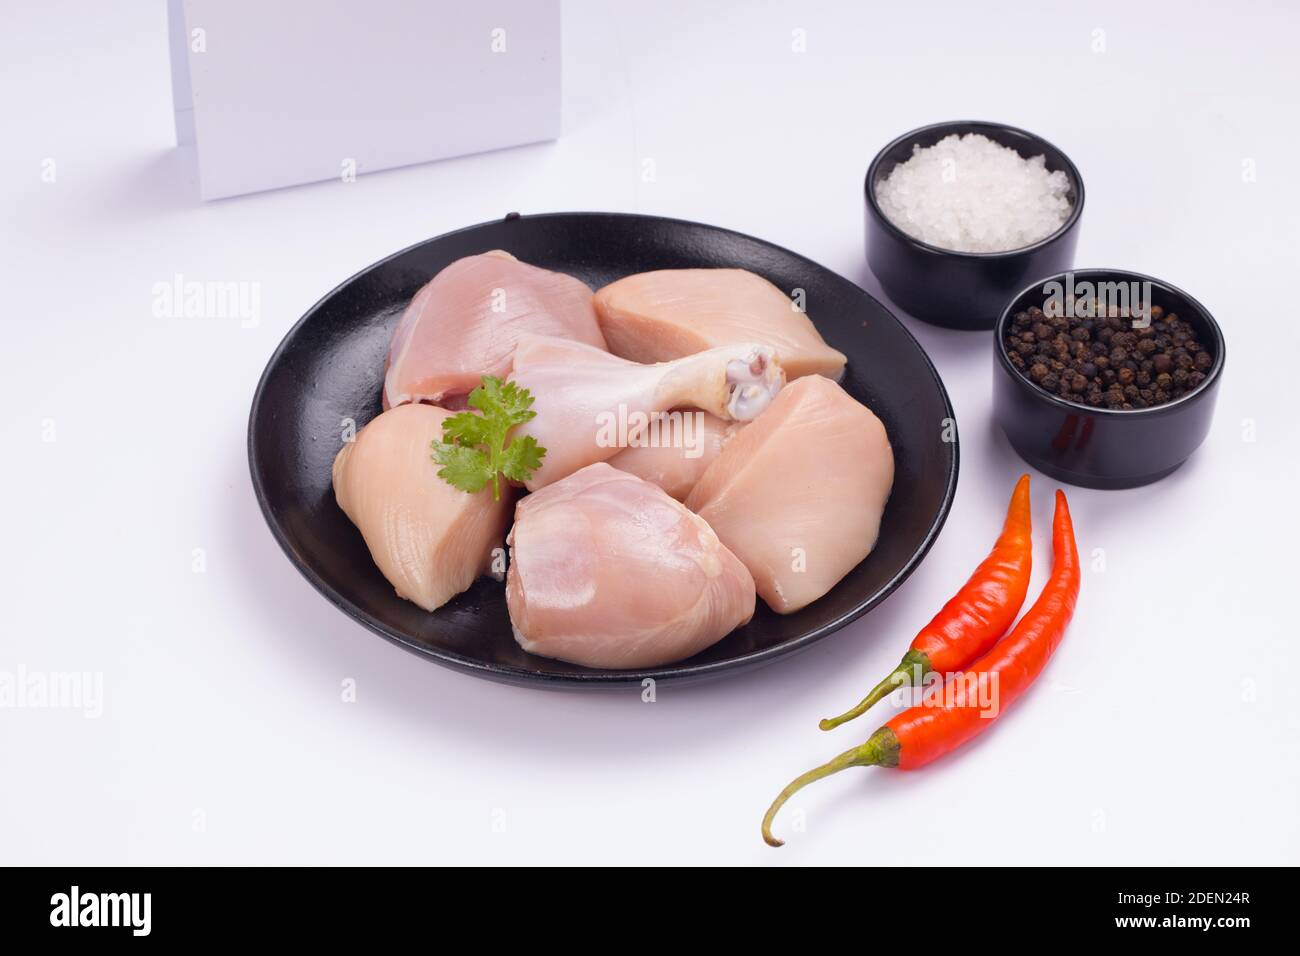 Rohes Huhn zartes Curry ohne Haut auf schwarzem Teller angeordnet geschnitten und mit rotem Chili, schwarzem Pfeffer und Salz auf weißem strukturierten Hintergrund garniert Stockfoto